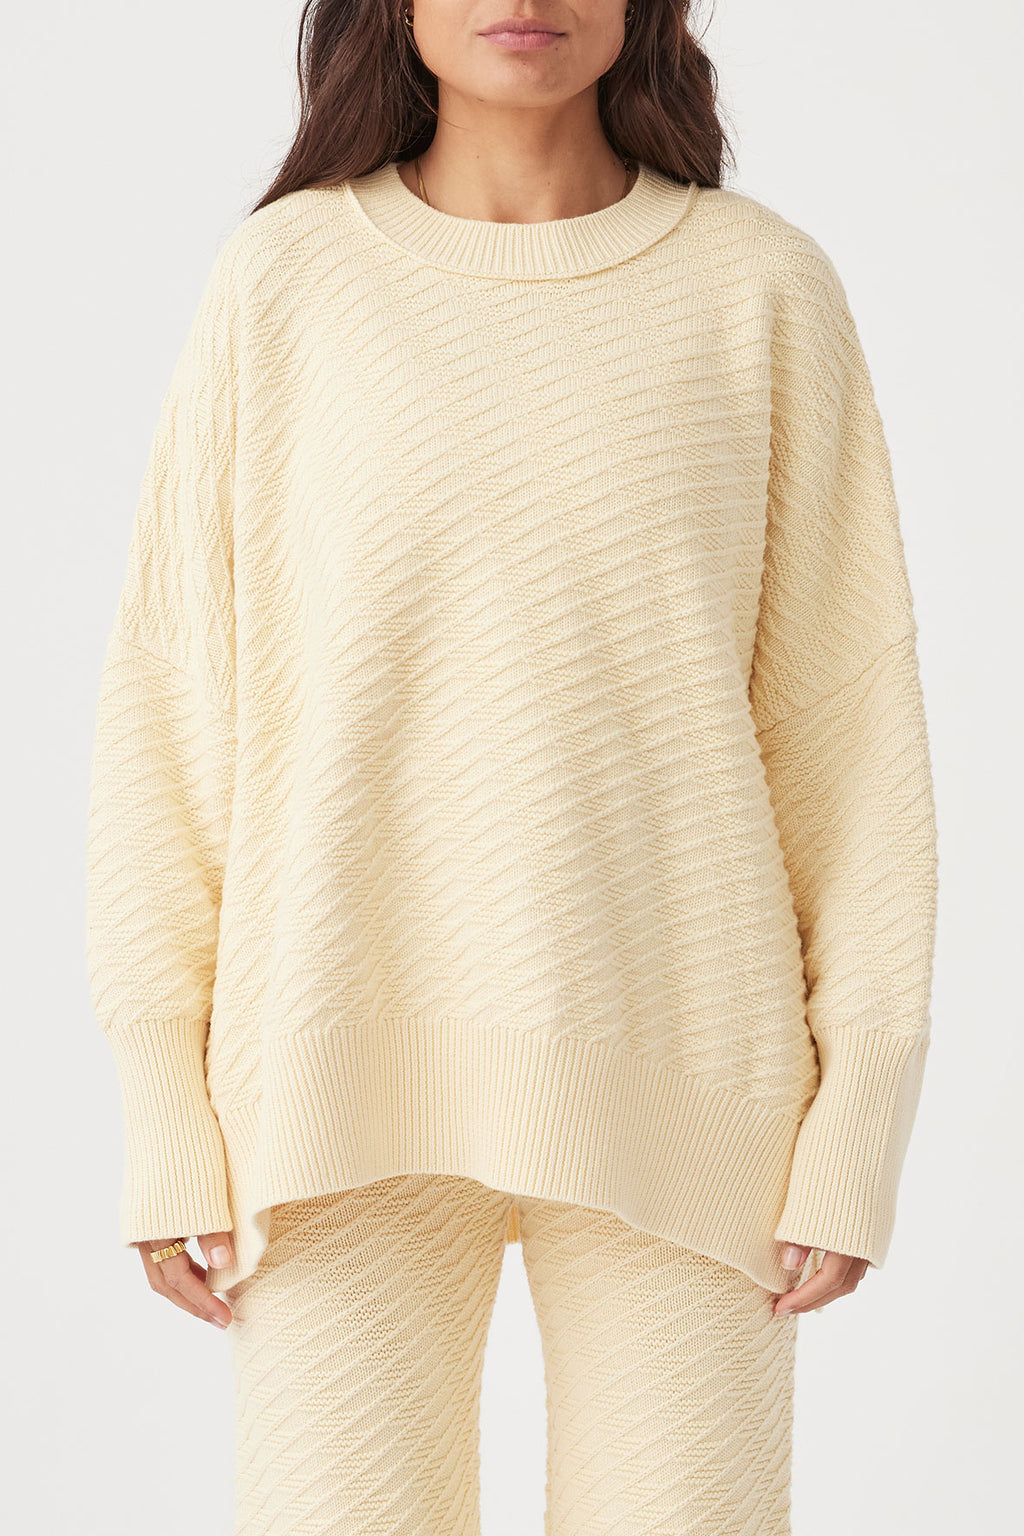 Vivi Sweater - Butter